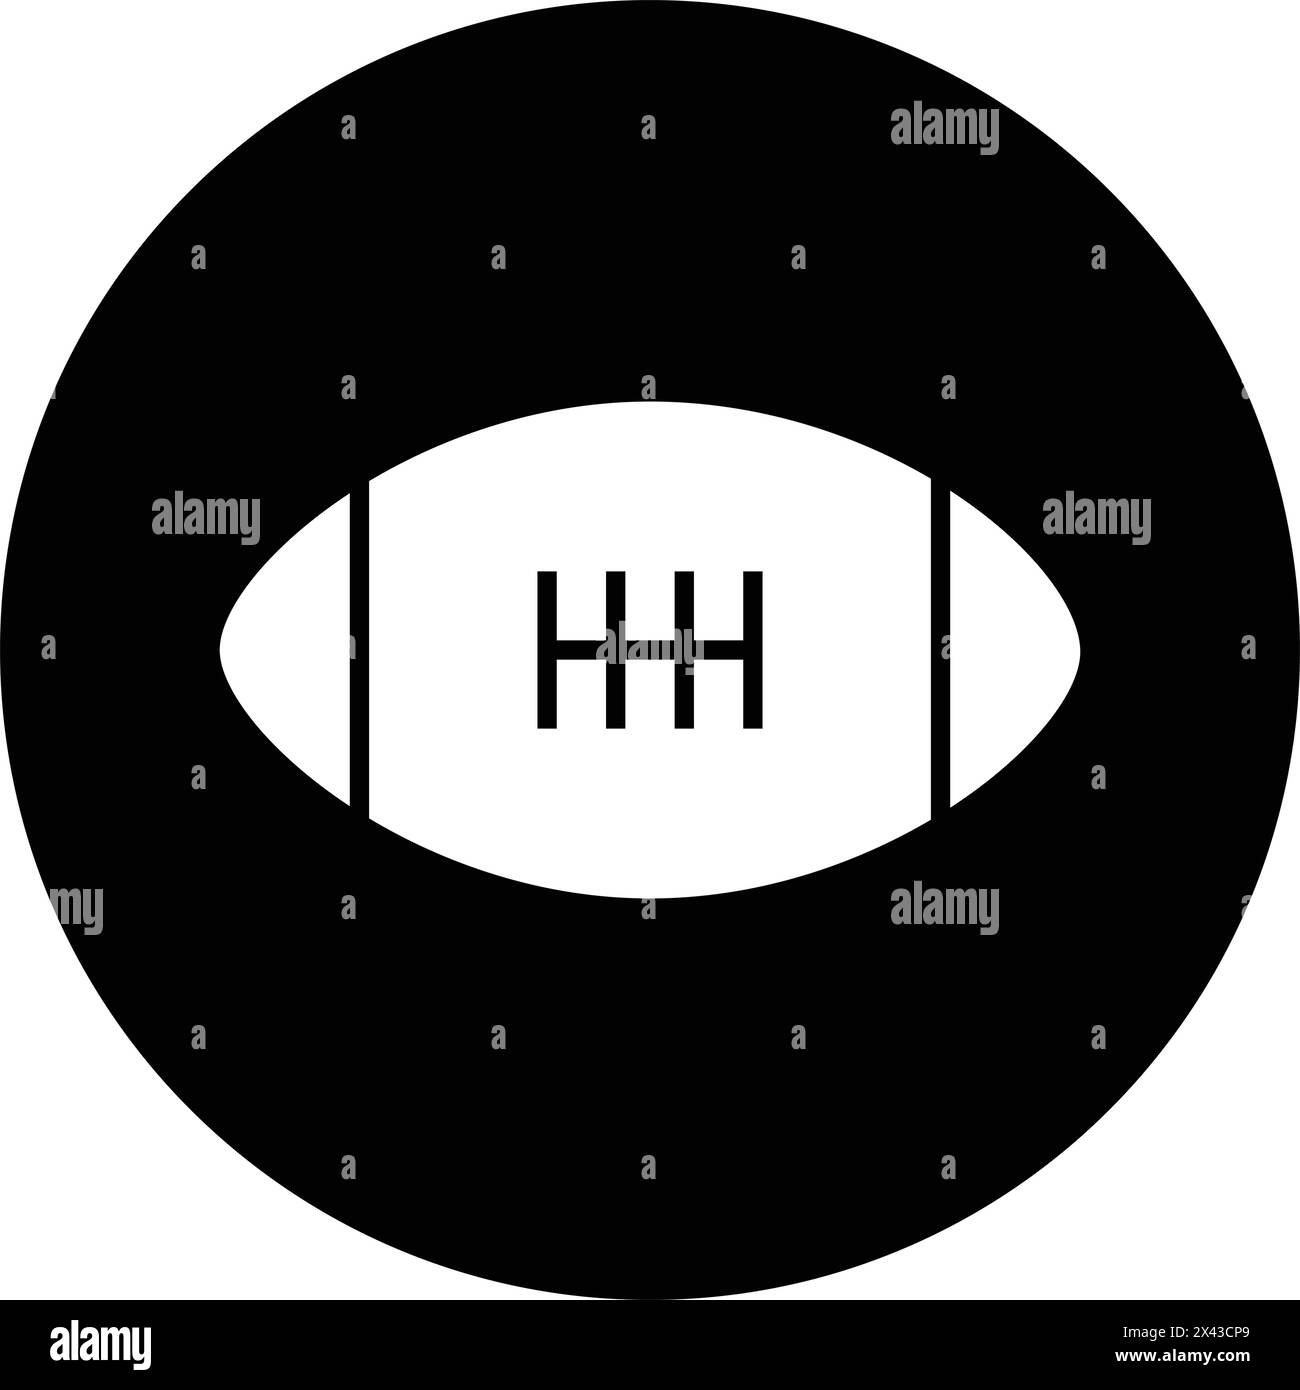 American football logo vector illustration design Stock Vector